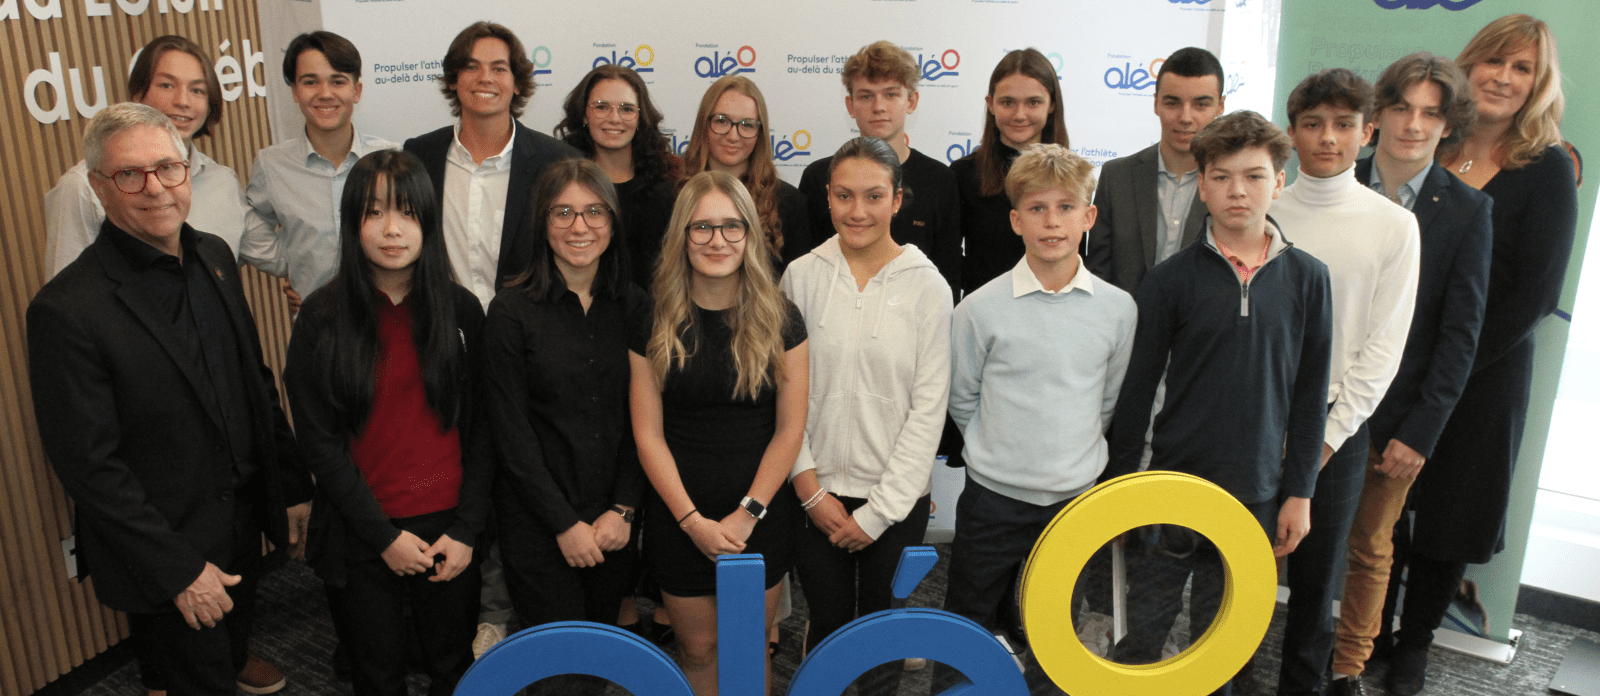 La Fondation Aléo remet 70 000 $ en bourses individuelles à 30 athlètes exemplaires de Golf Québec